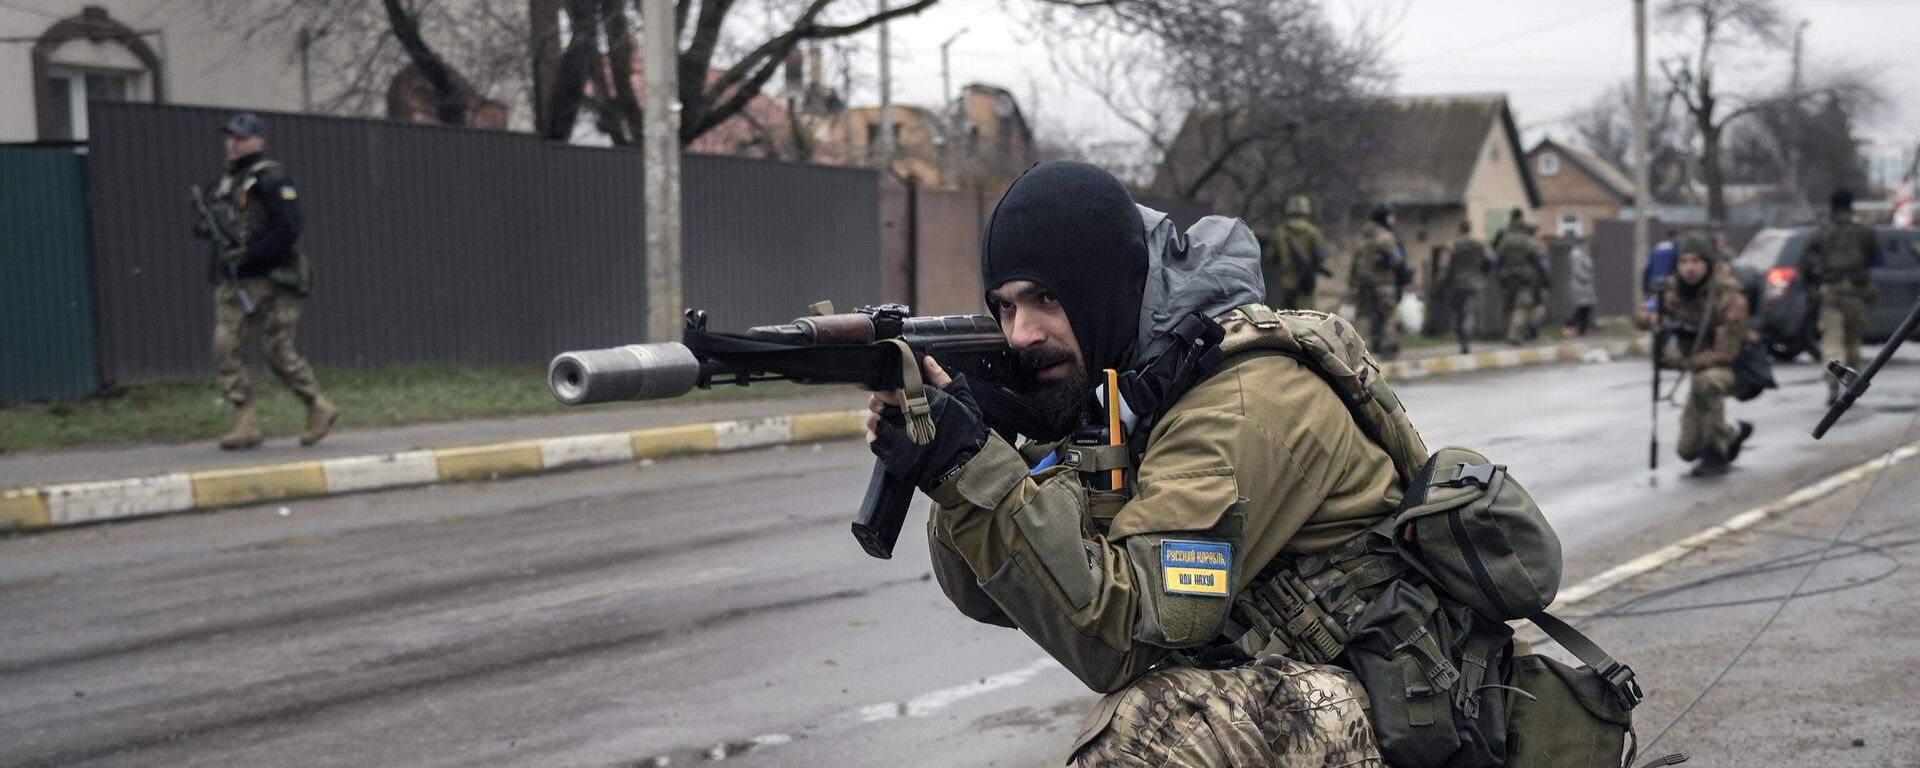 Украинские военнослужащие в пригороде Киева Буче, 2 апреля 2022 года - Sputnik Latvija, 1920, 07.04.2022